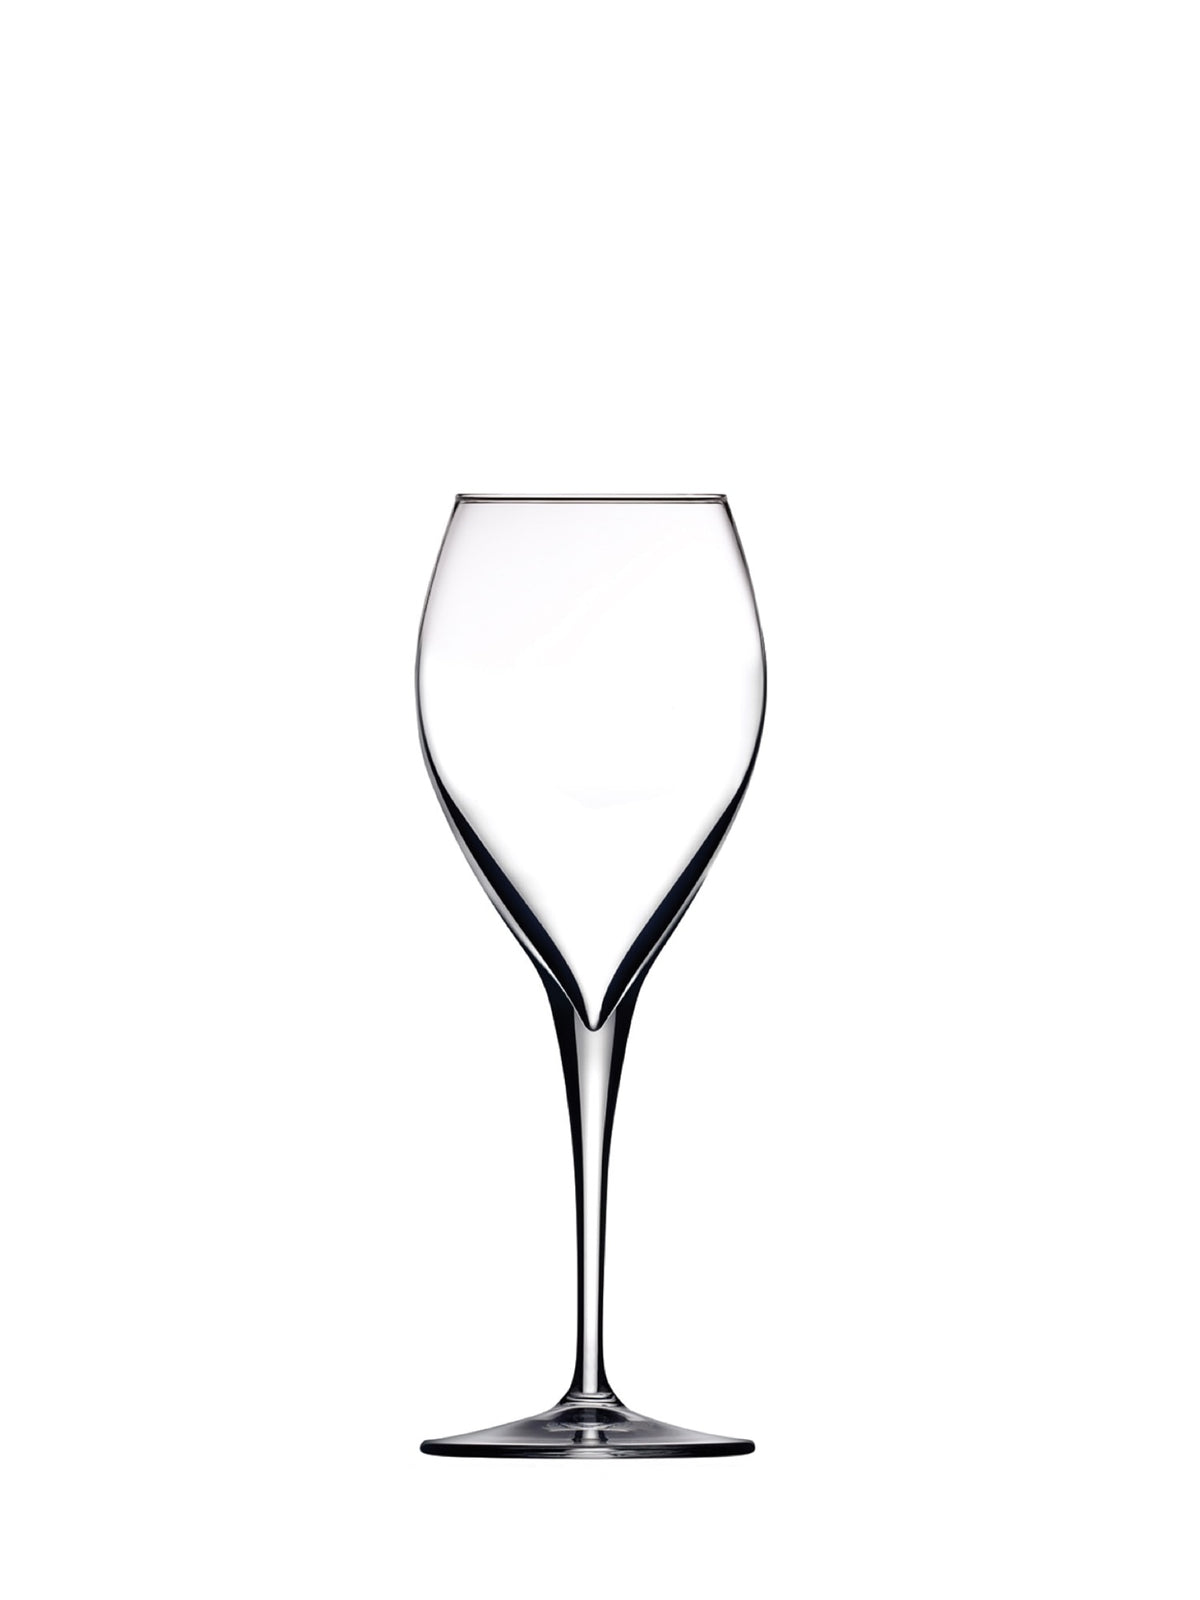 Et sæt på seks Monte Carlo-rødvinsglas med en kapacitet på 44,5 cl - til at nyde din yndlingsrødvin.